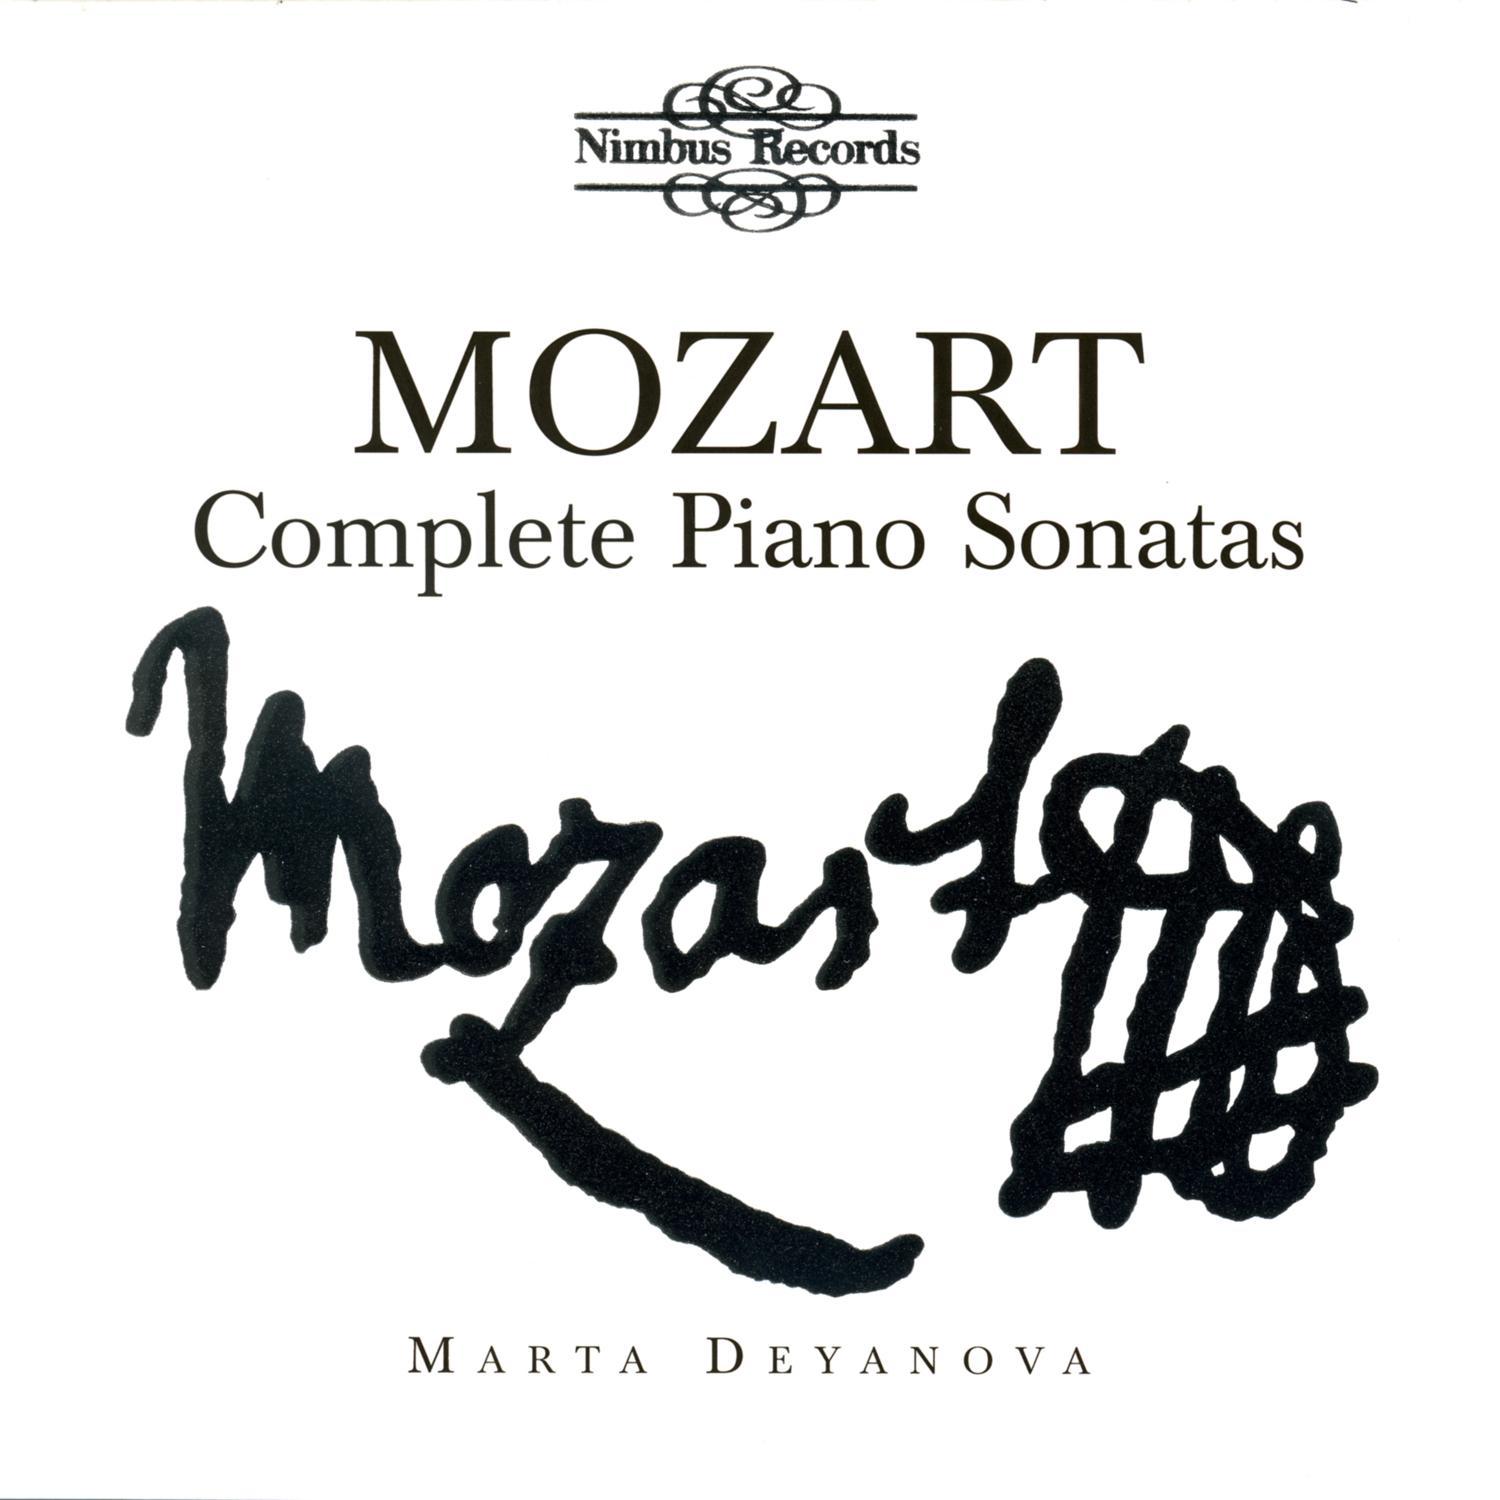 Piano Sonata in C major, K. 279/189d: I. Allegro